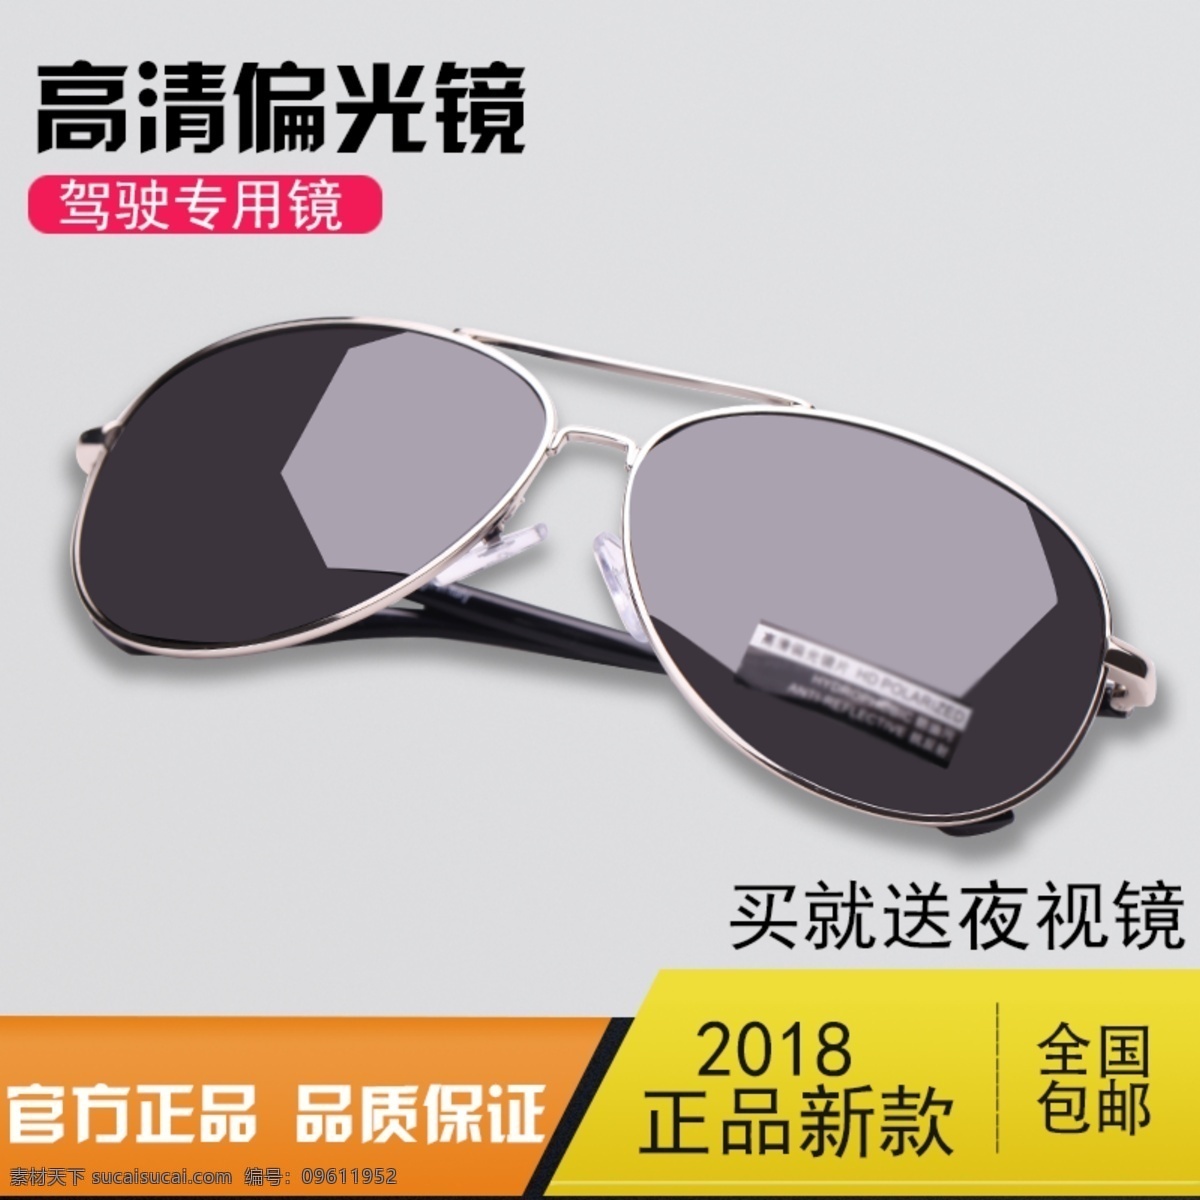 眼镜 太阳眼镜 促销活动 主 图 灰色 墨镜直通车 直通车 眼镜直通车